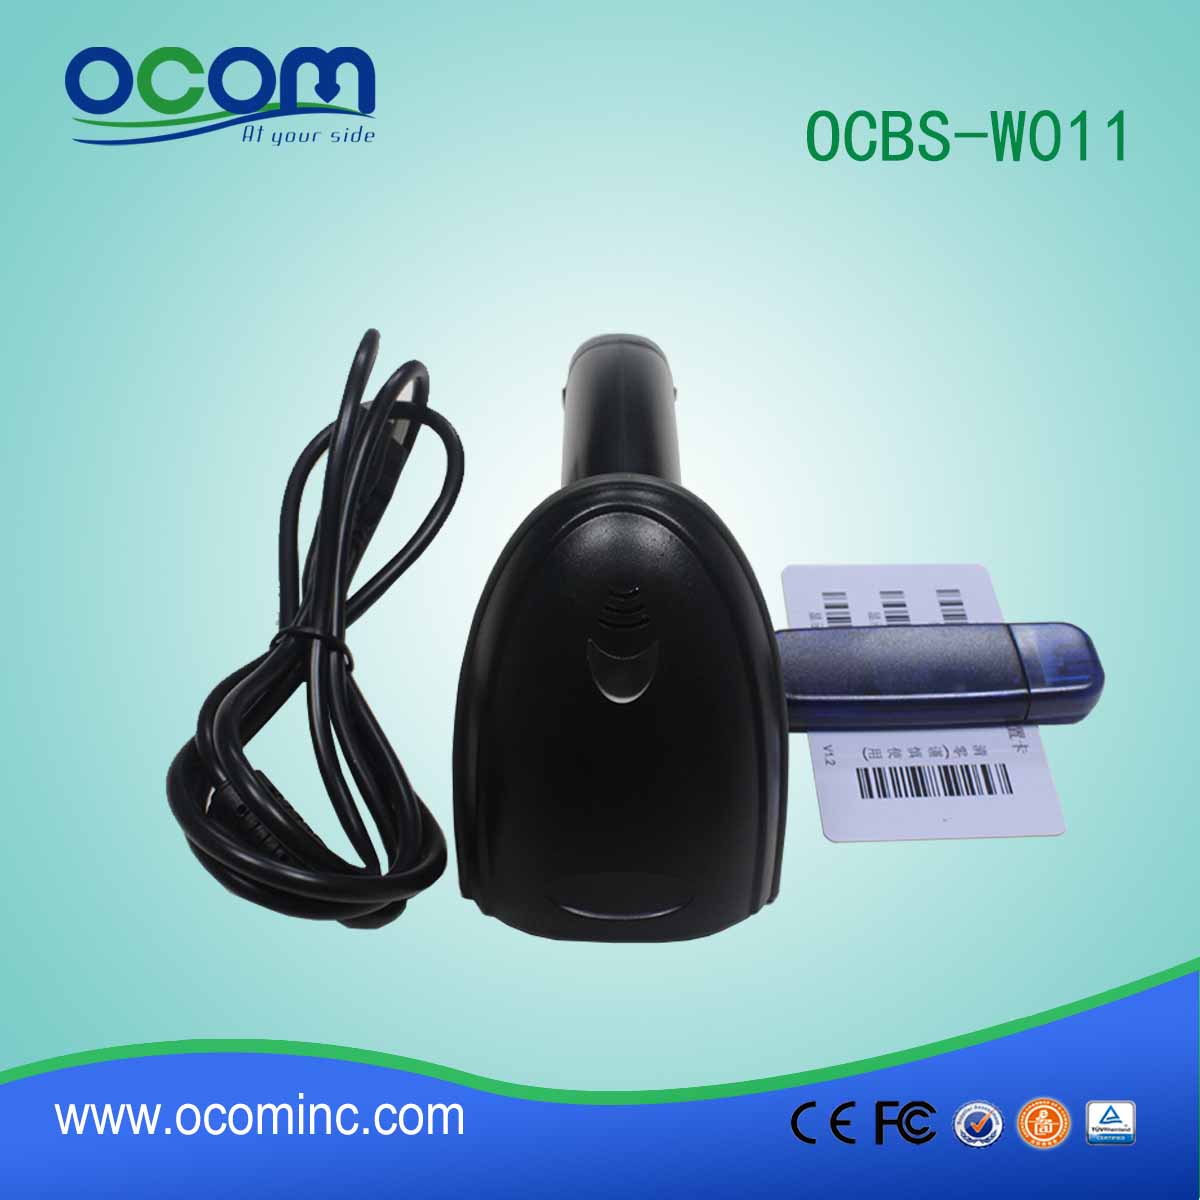 OCBS-W011 مصغرة 433MHZ ماسح الباركود لاسلكية مع جهاز استقبال USB